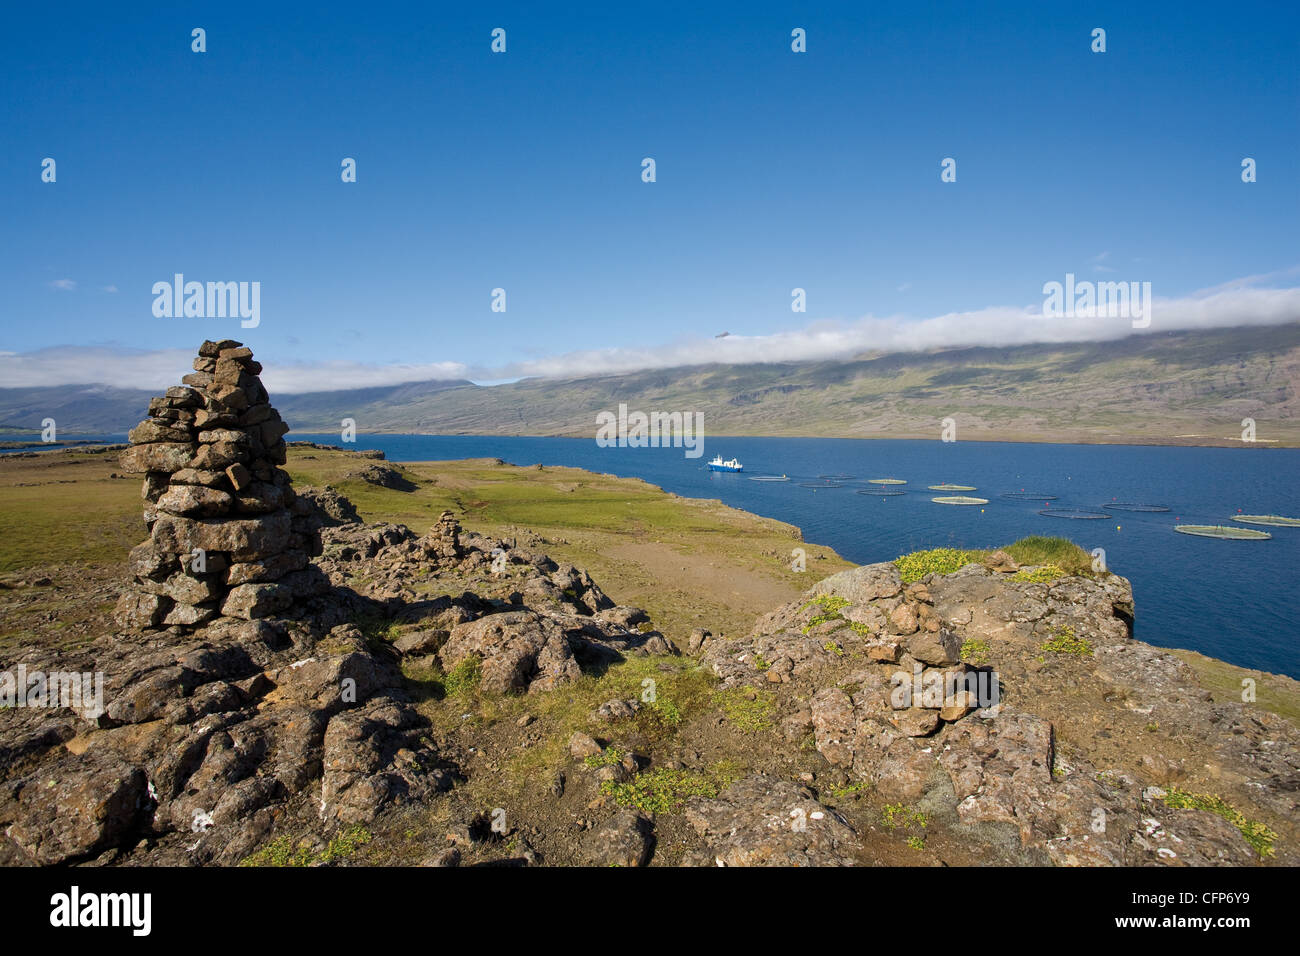 L'Islande, vue panoramique avec aquafarm visible à distance Banque D'Images